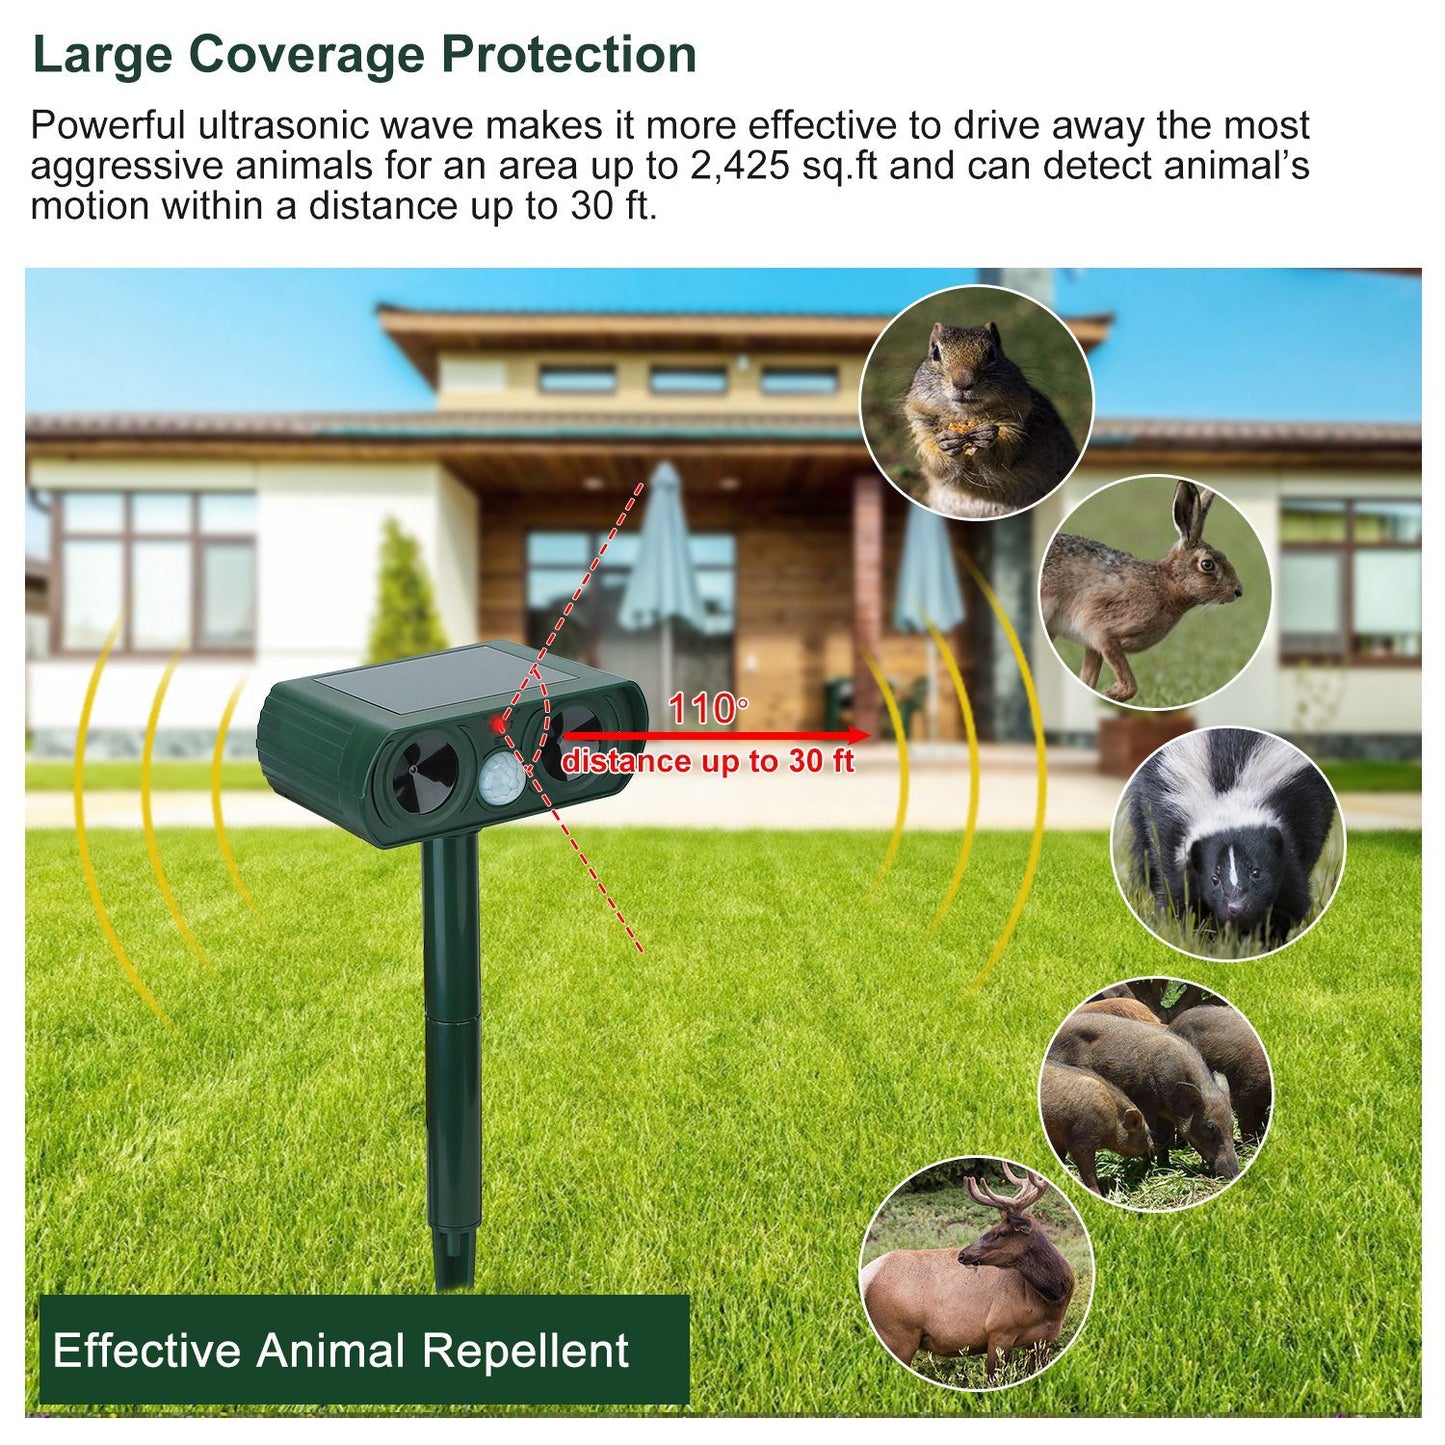 Ultrasonic Animal Repeller Solar Powered Motion Sensor Repellent IPX4 Waterproof Outdoor For Farm Garden Yard Repelling Deer Raccoon Cat Dog Rabbit Squirrel Bird